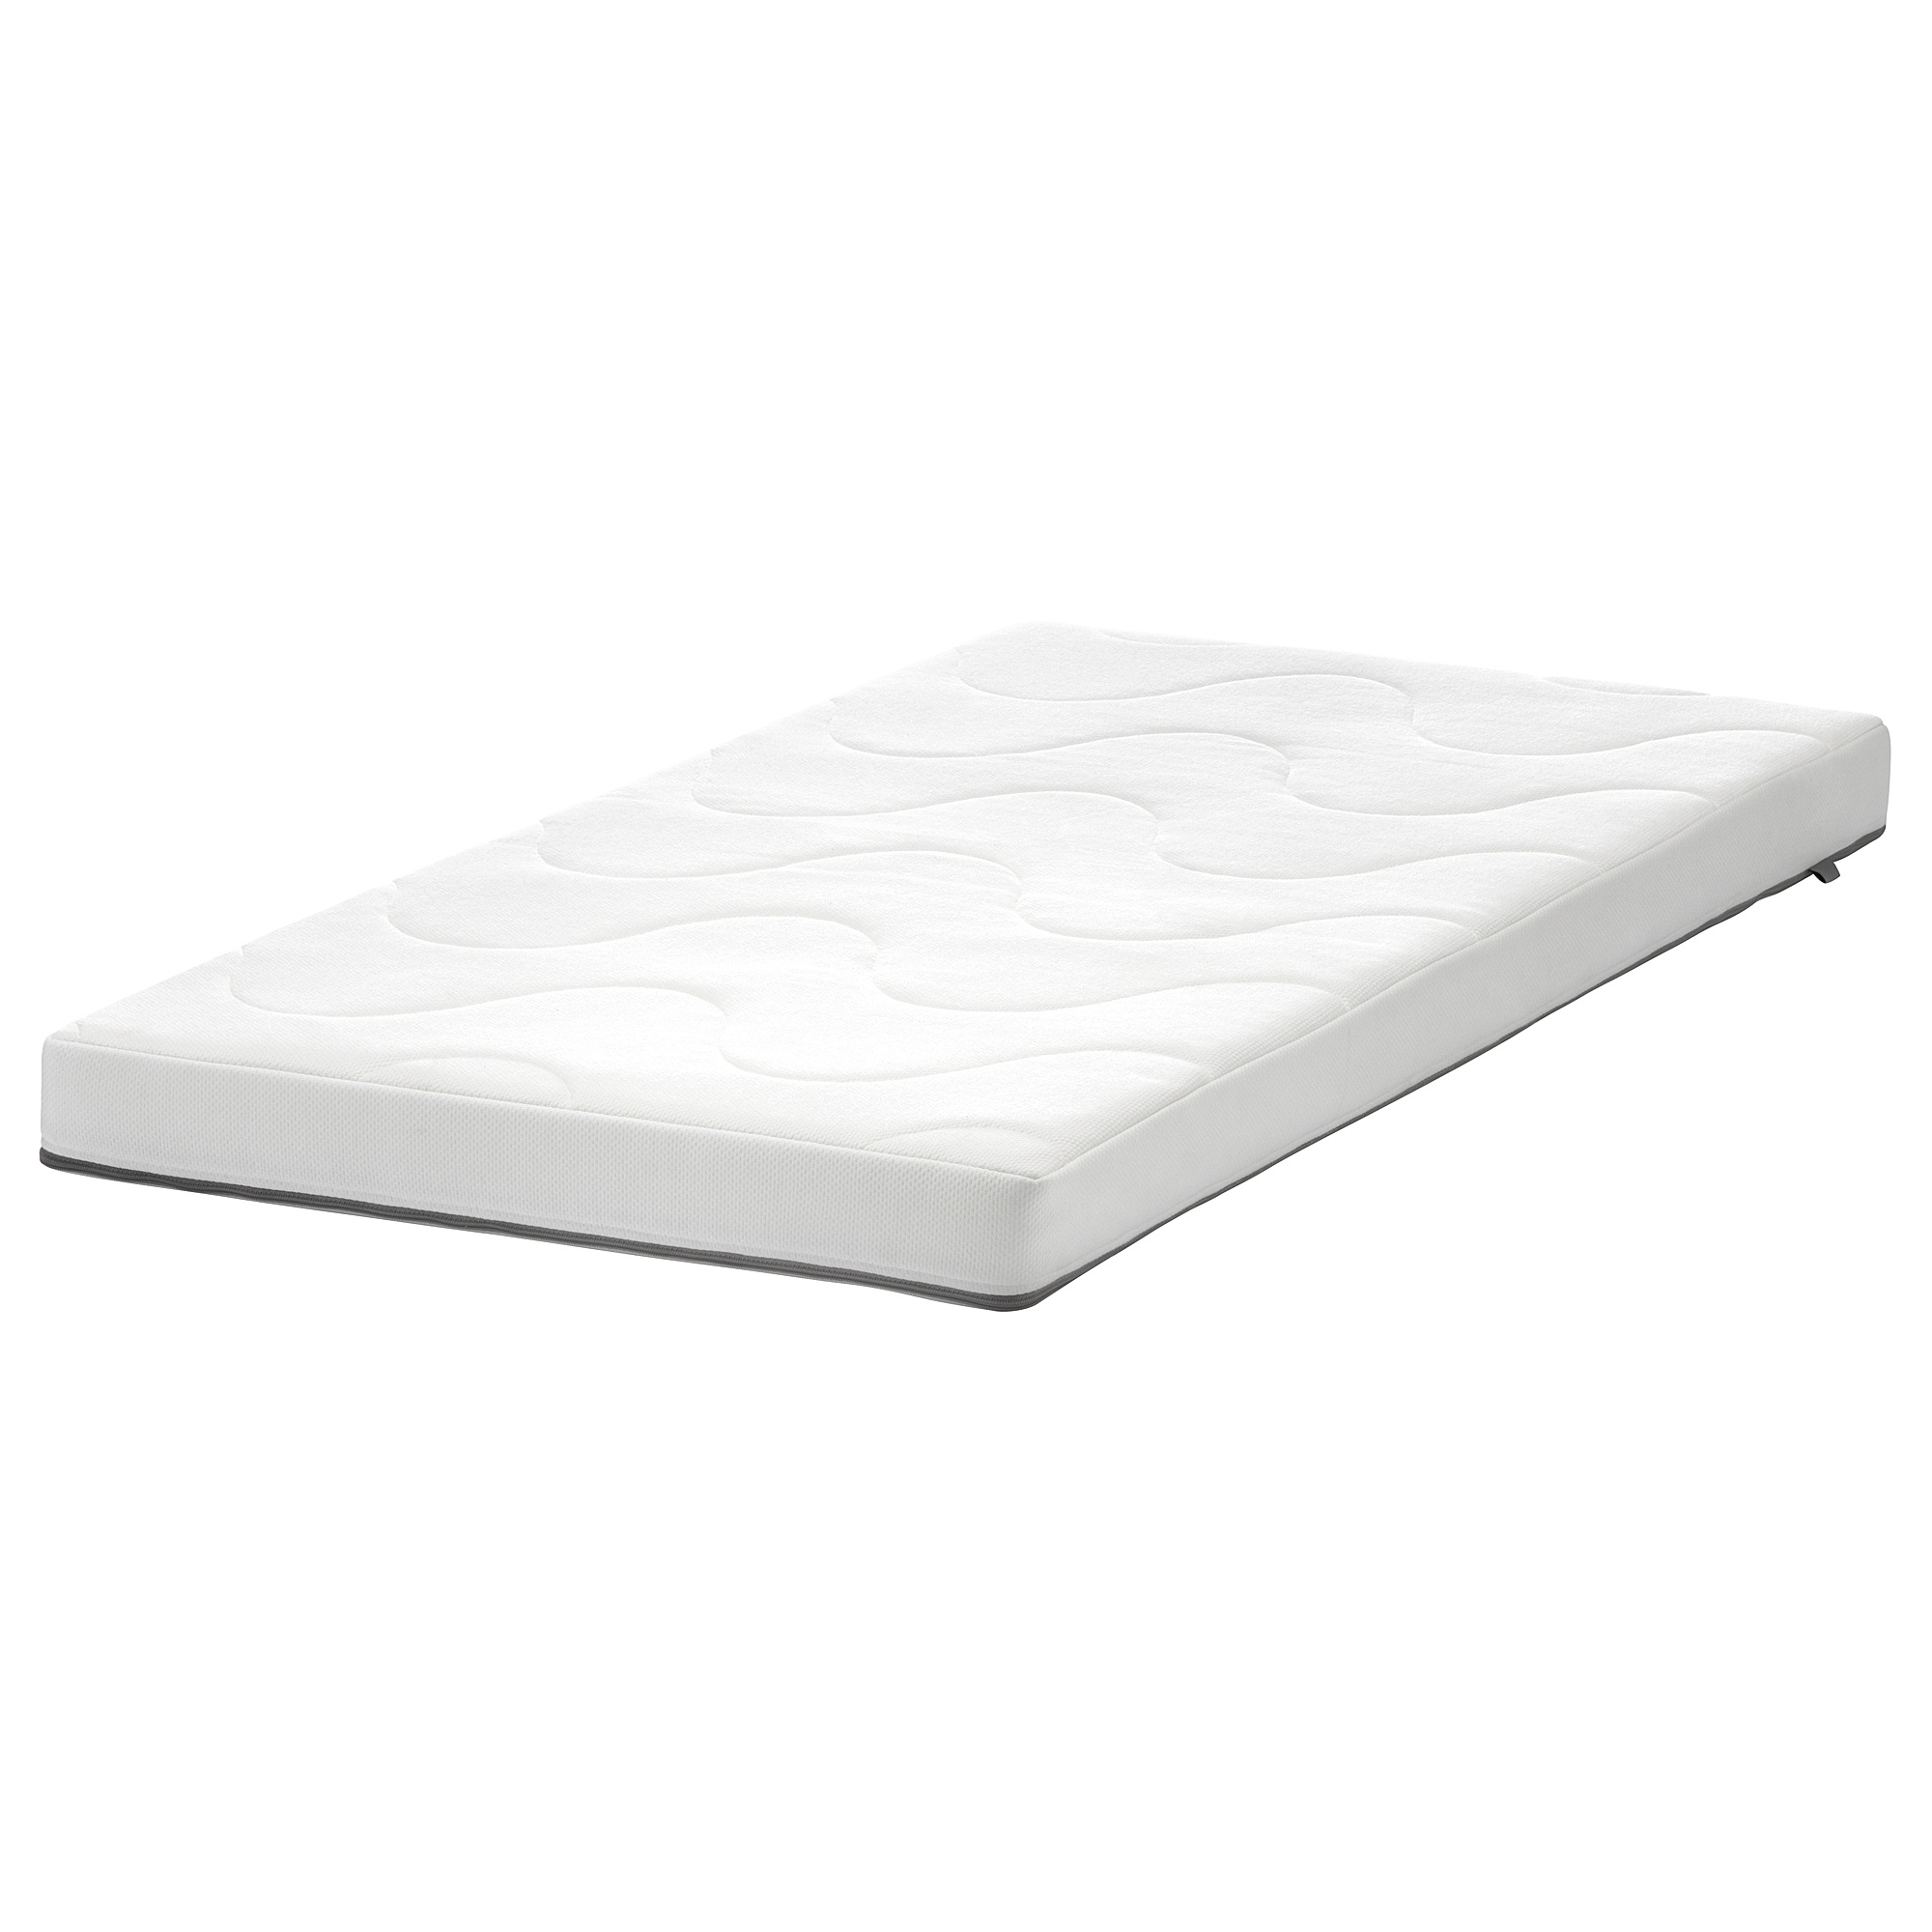 KRUMMELUR foam mattress for cot